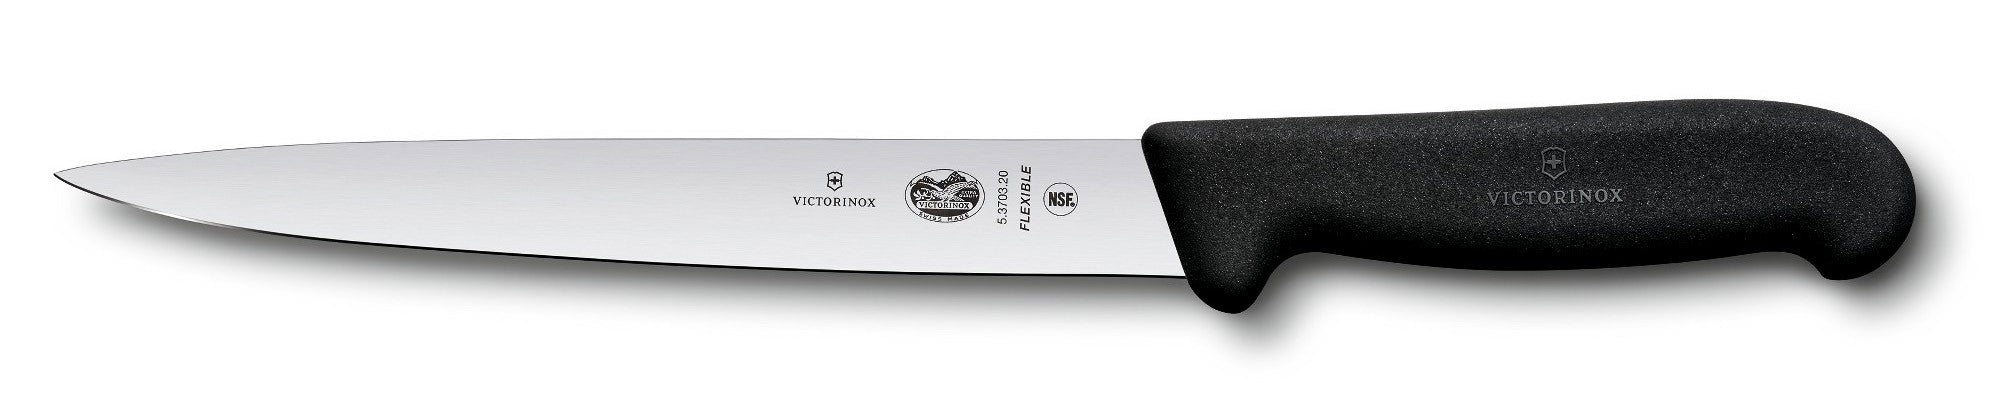 Victorinox Fibrox Semi-Flexible Fillet Knife 40711 / 5.3703.20 Canada